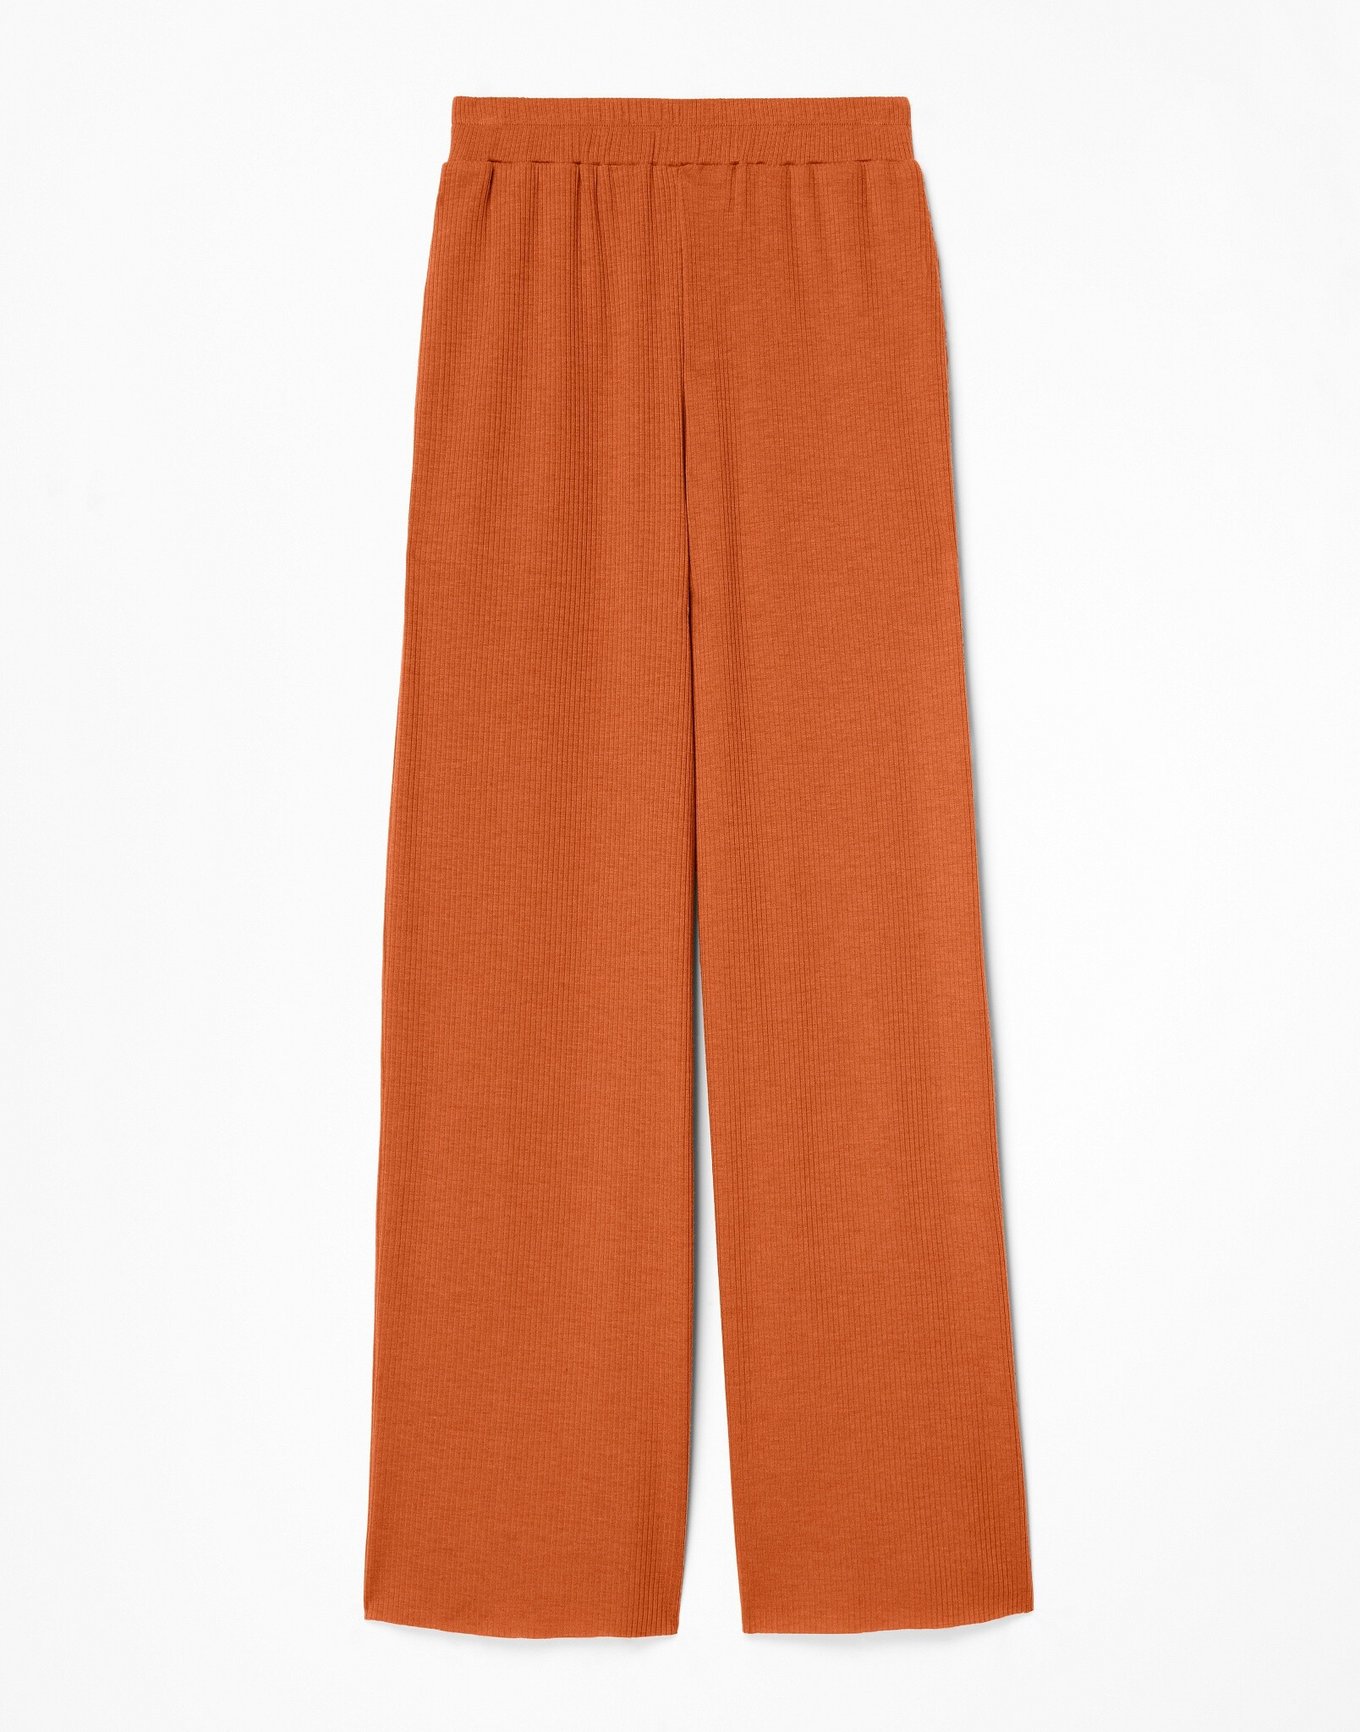 Zara Man Orange Trousers pants Sz 34 | eBay